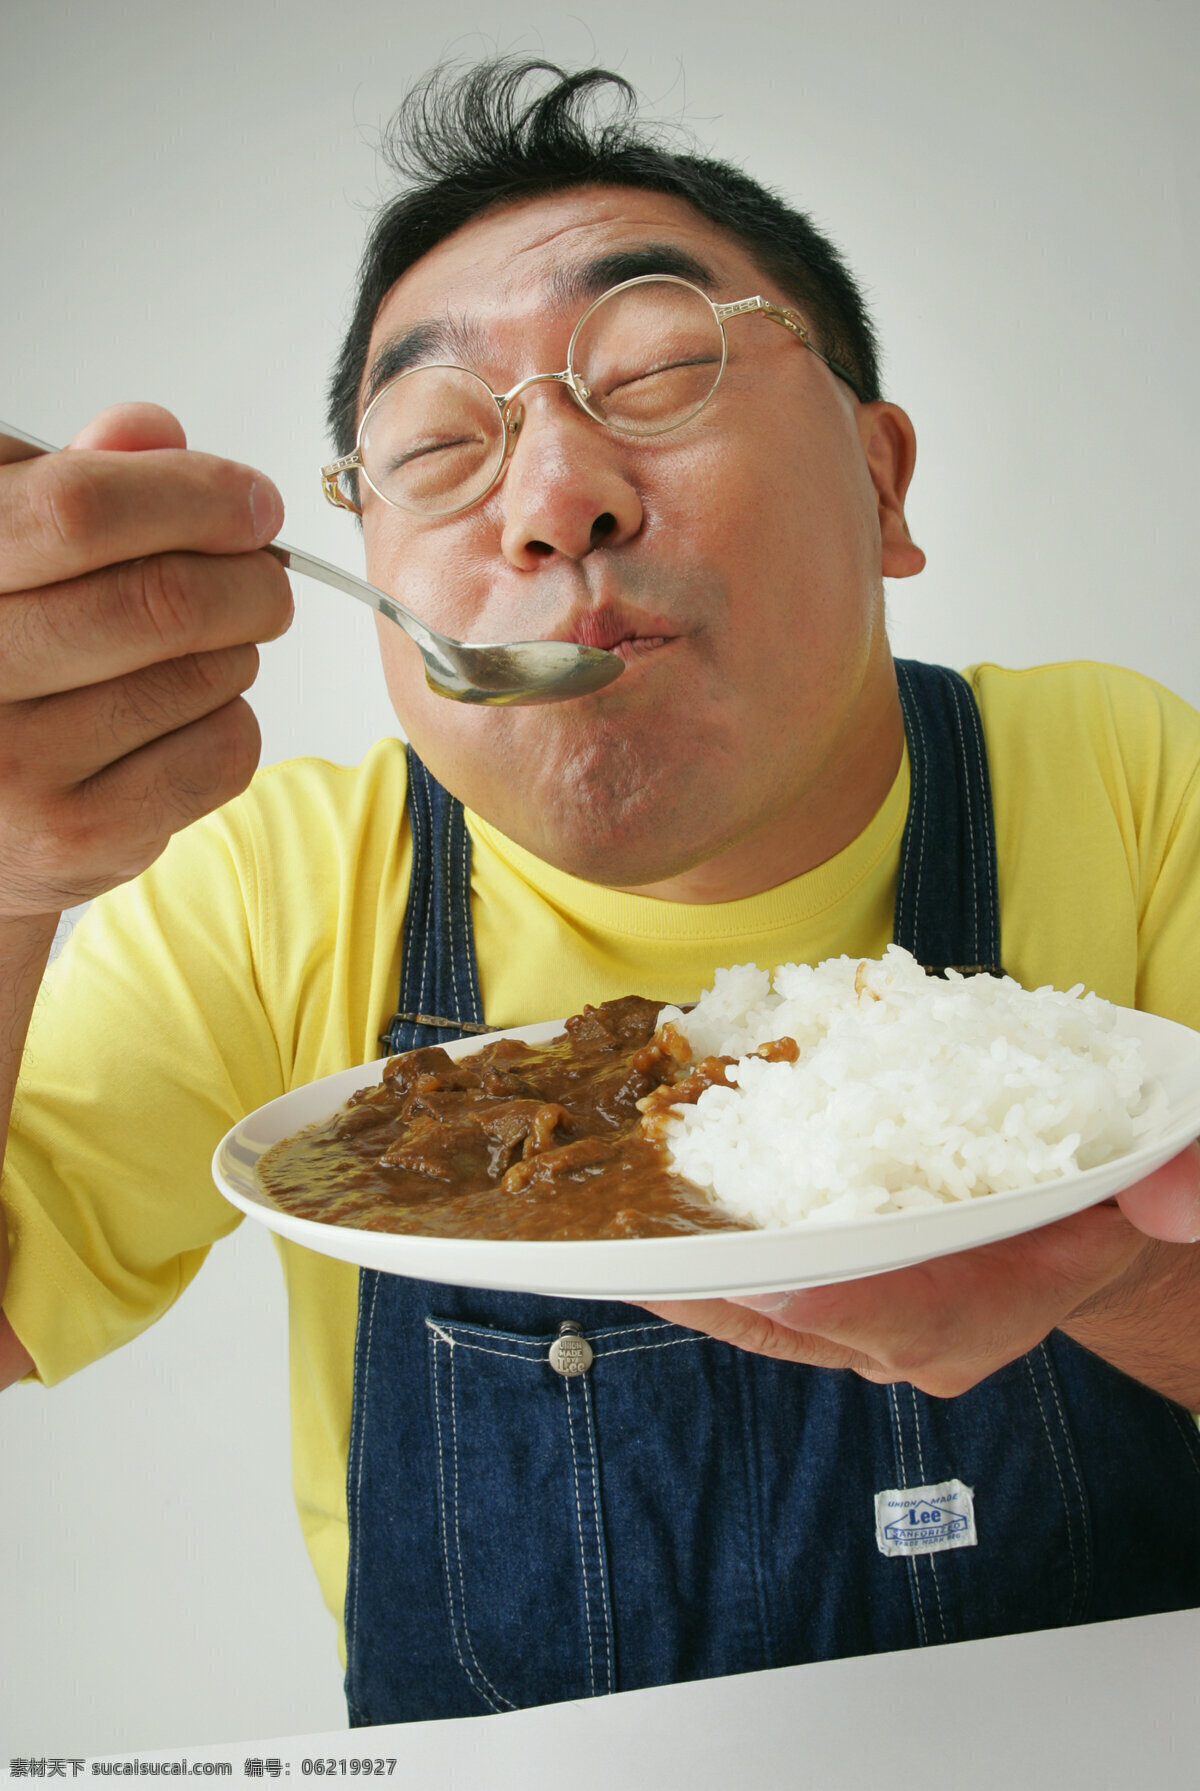 享受 美食 男人 美味 好吃 食物 可口 诱人 张大嘴巴 夸张表情 男性 吃饭 米饭 男人图片 人物图片